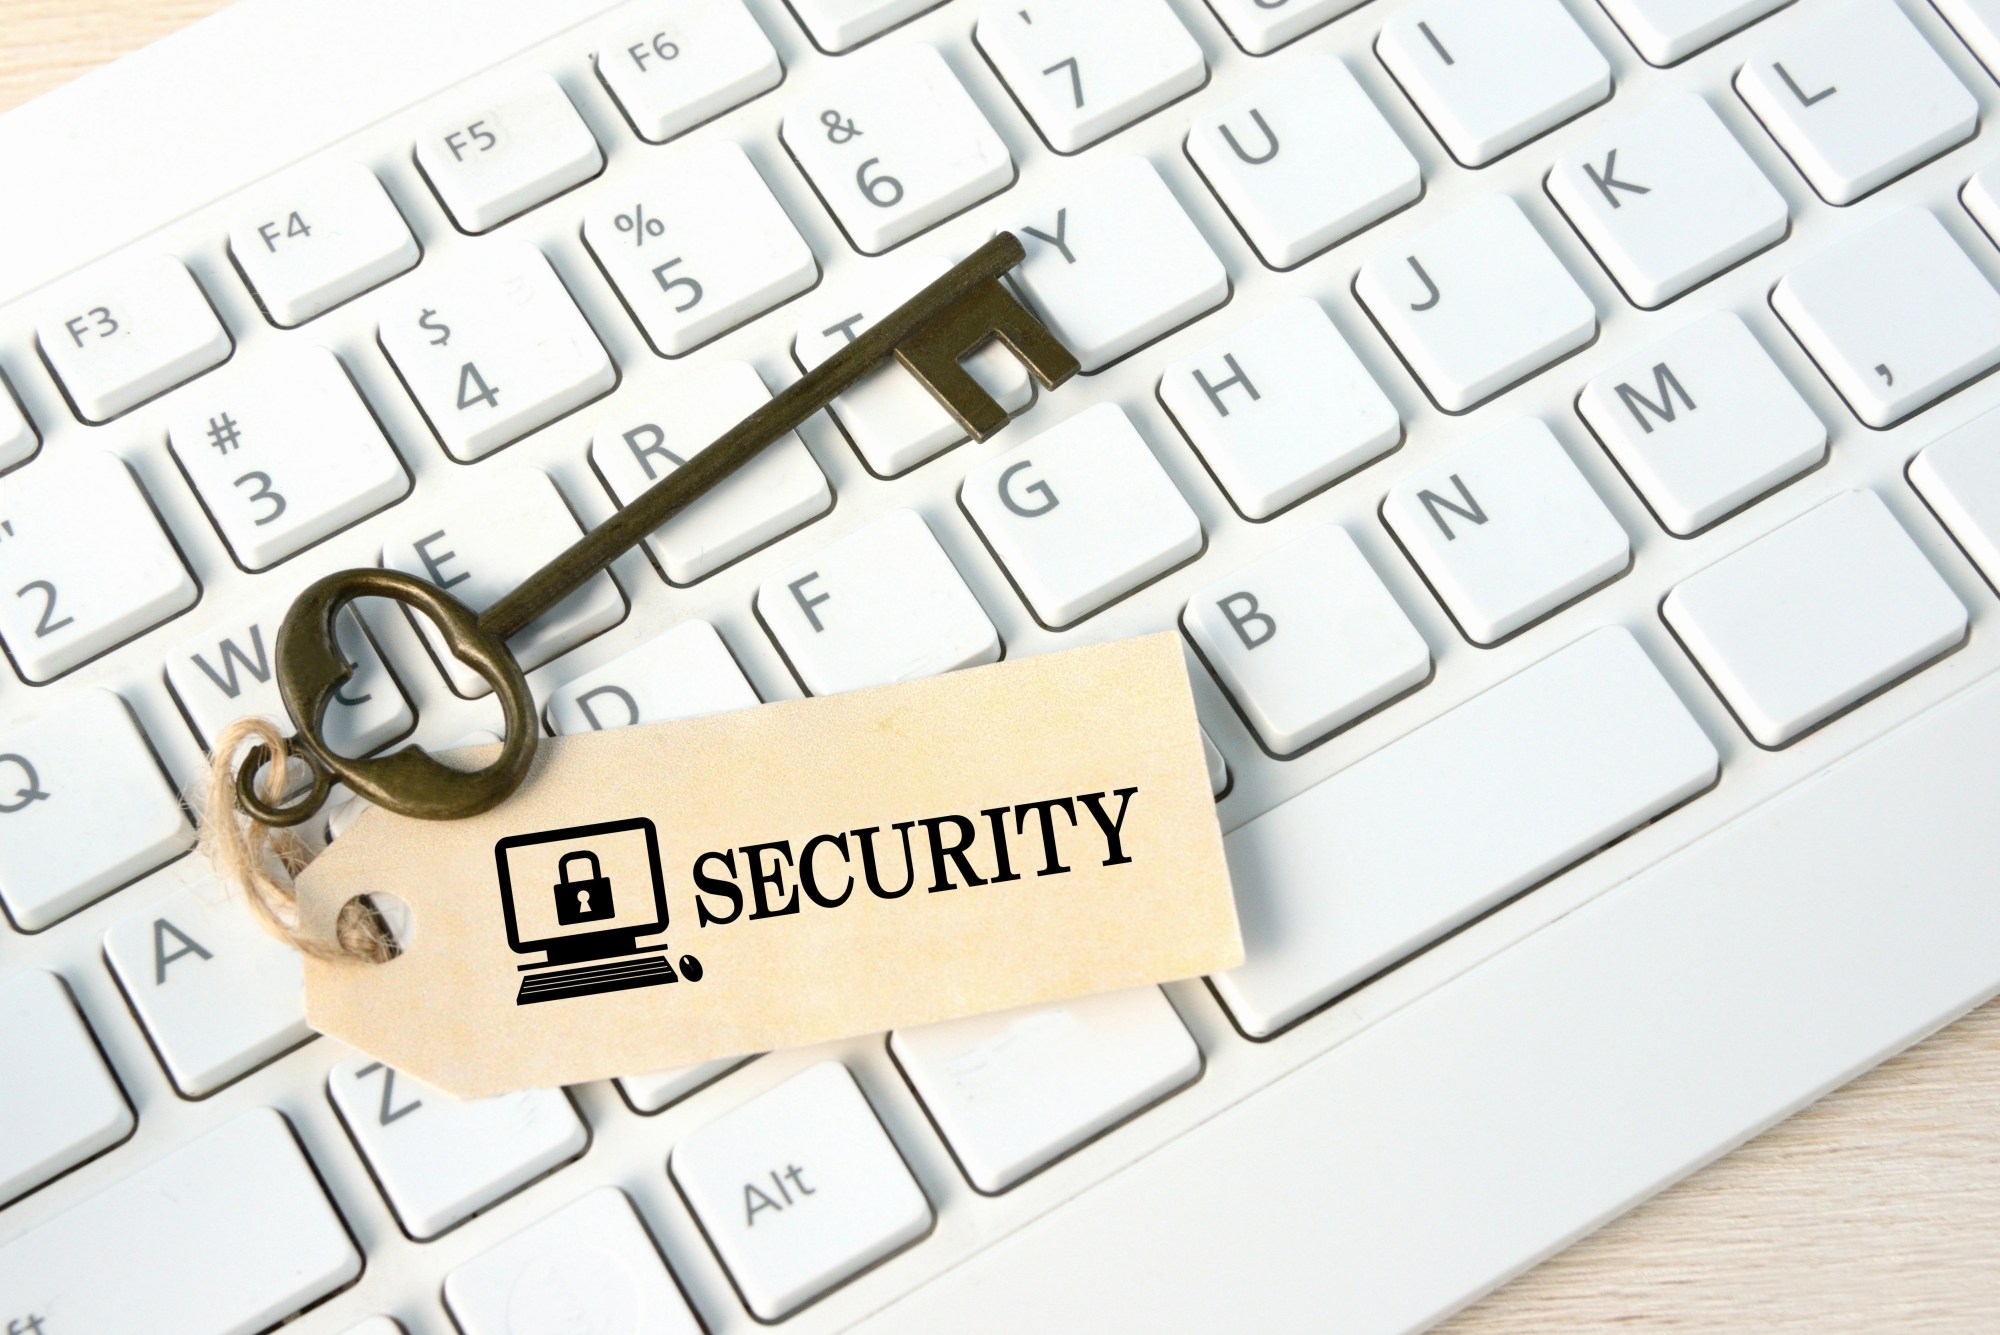 「セキュリティ」のイメージ_パソコンのキーボードの上に、SECURITYの鍵が乗っている様子